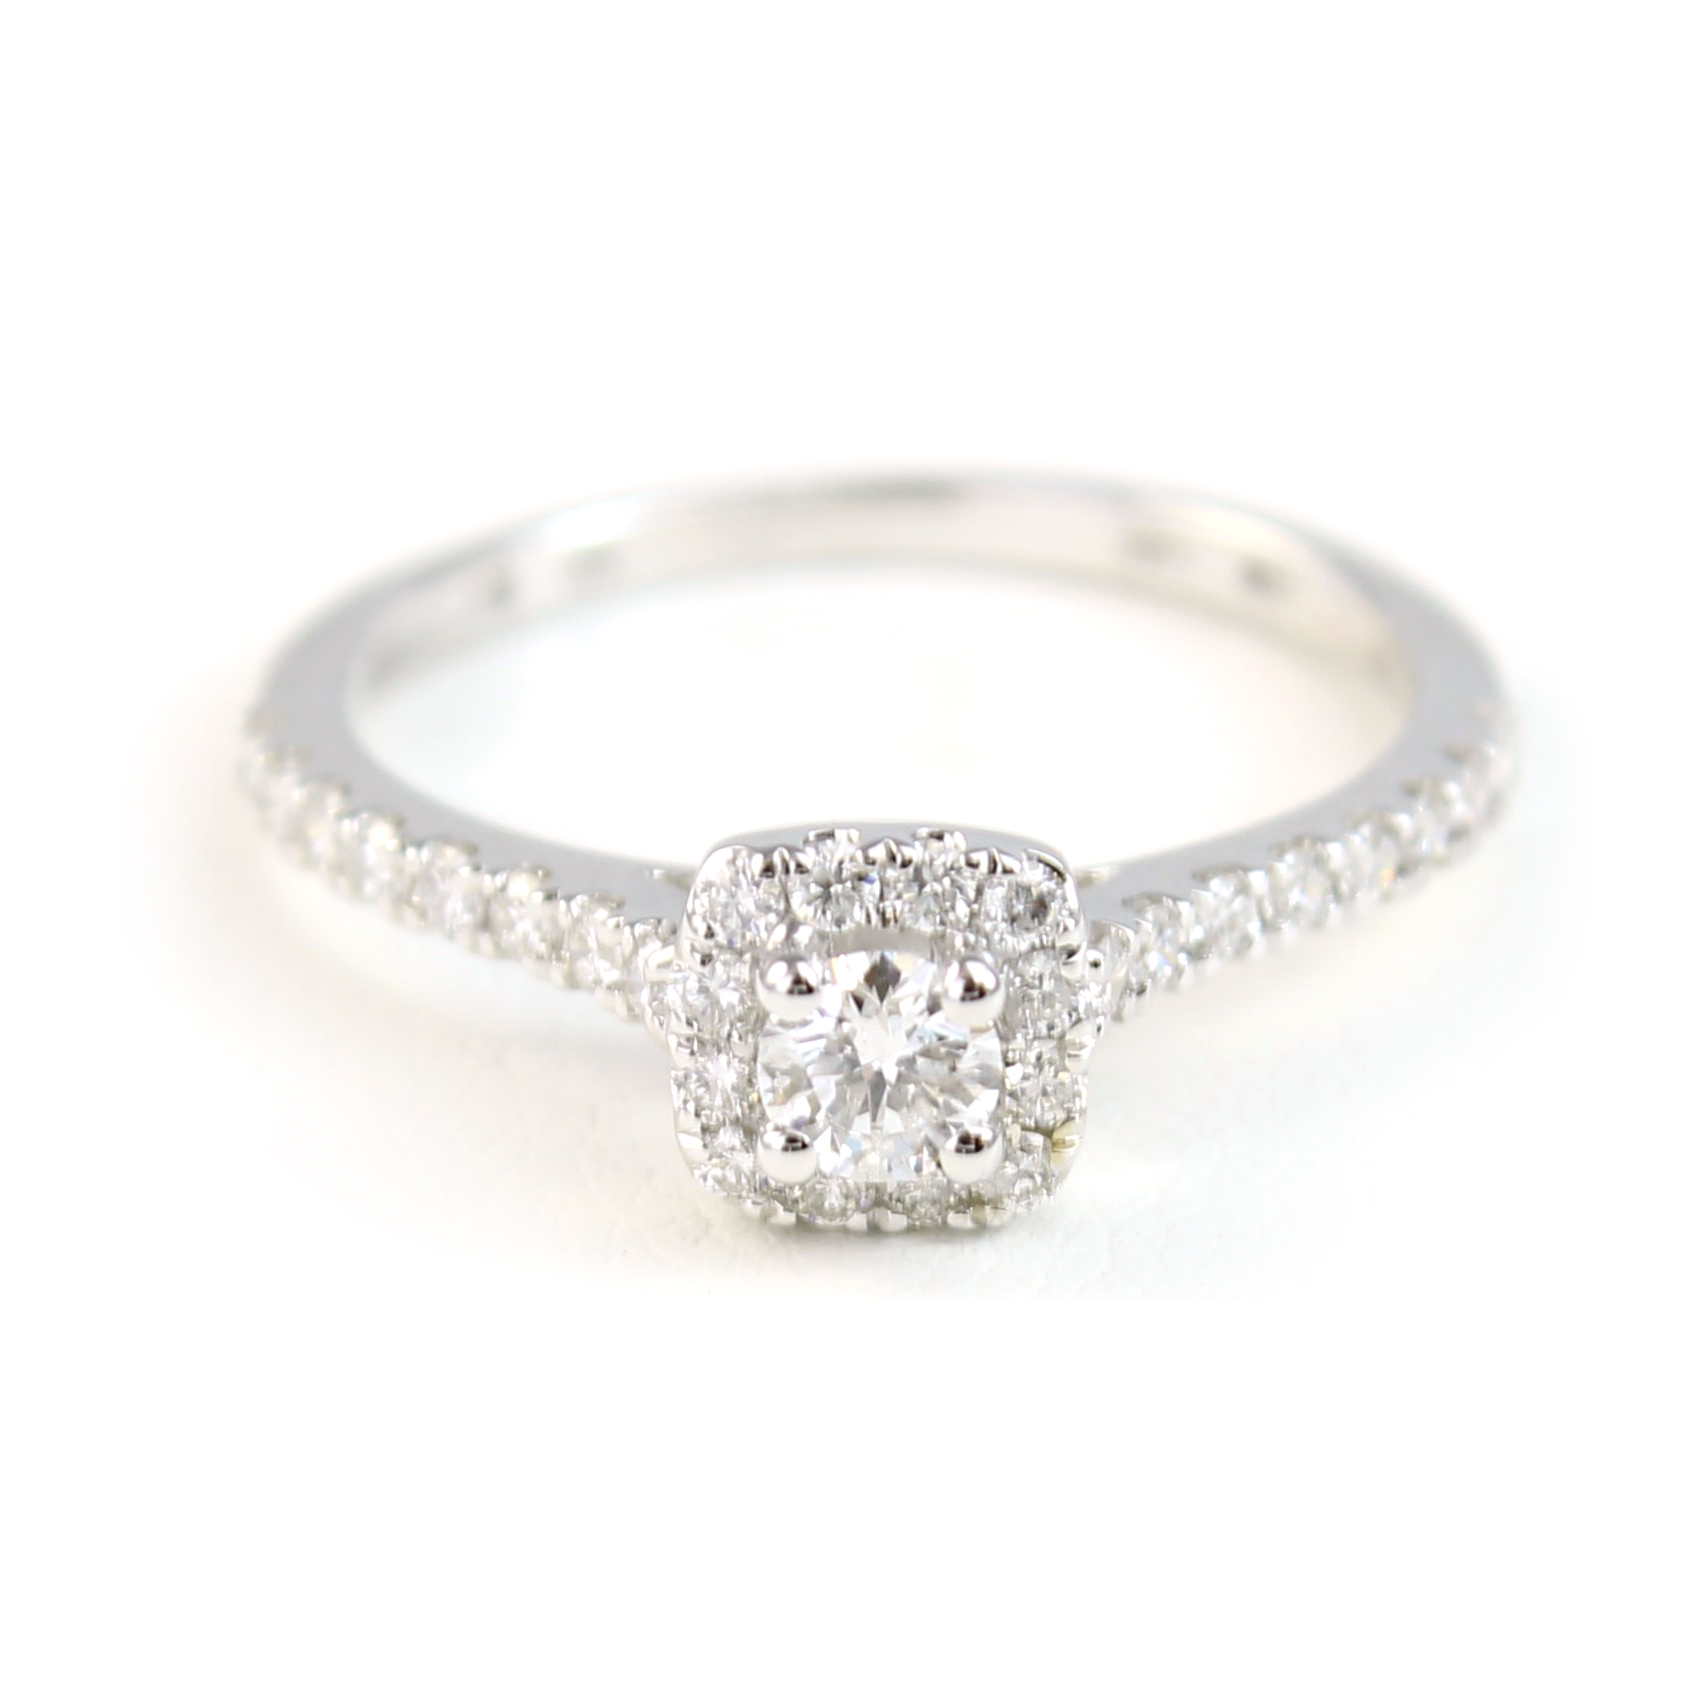 Paramount Gems 14 Karat White Gold Diamond Halo Ring